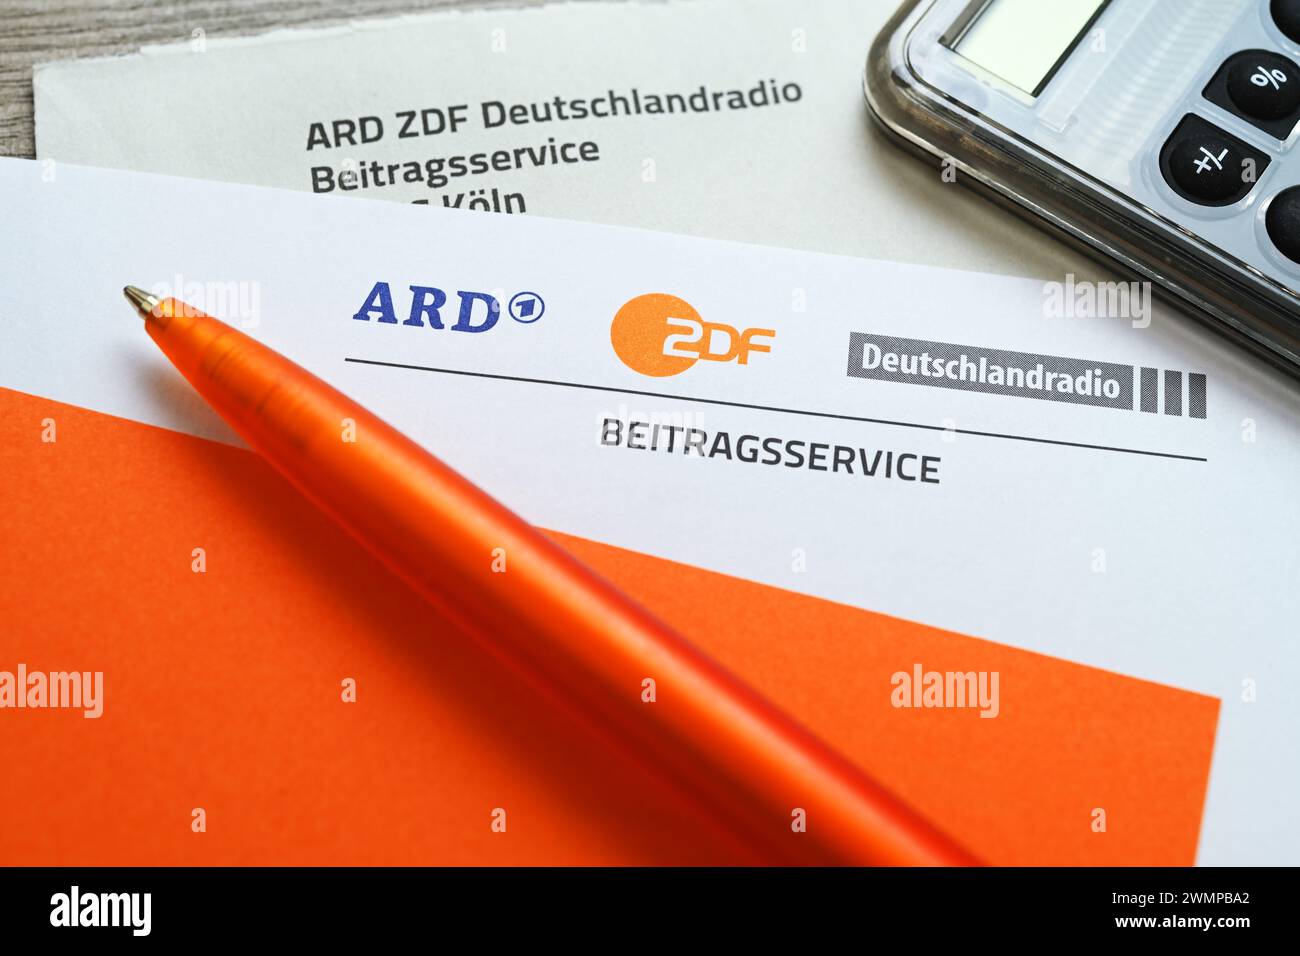 Lettera dell'ARD ZDF Deutschlandradio Beitragsservice con Calcolatrice, aumento simbolico della tassa di trasmissione Foto Stock